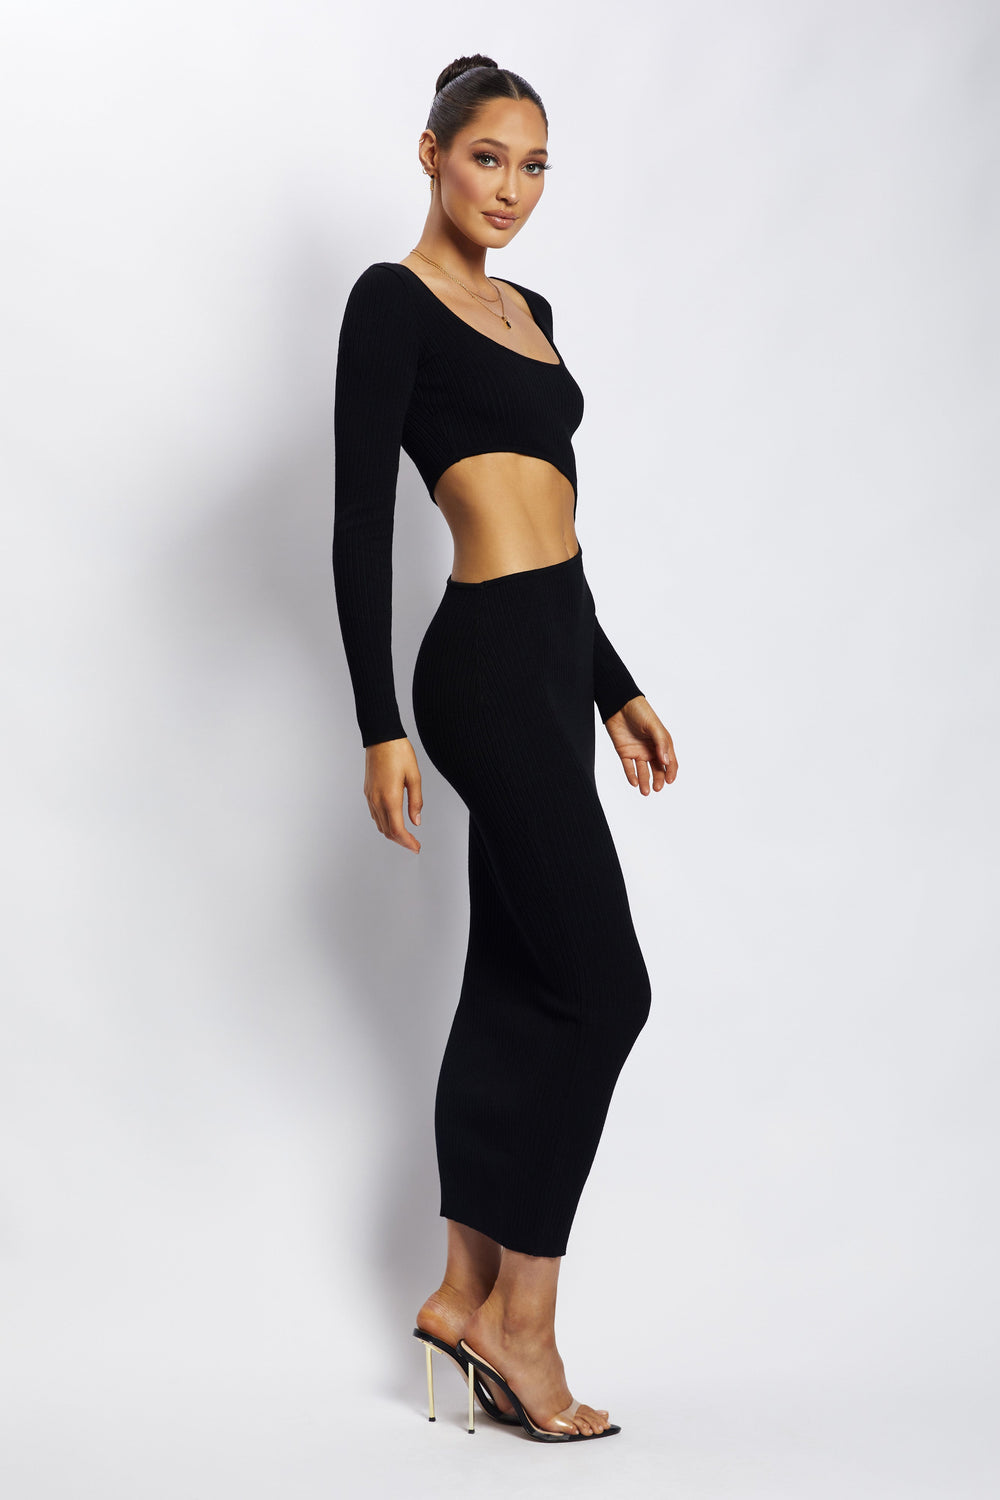 Gaia Cut Out Asymmetric Knitted Midi Dress - Black